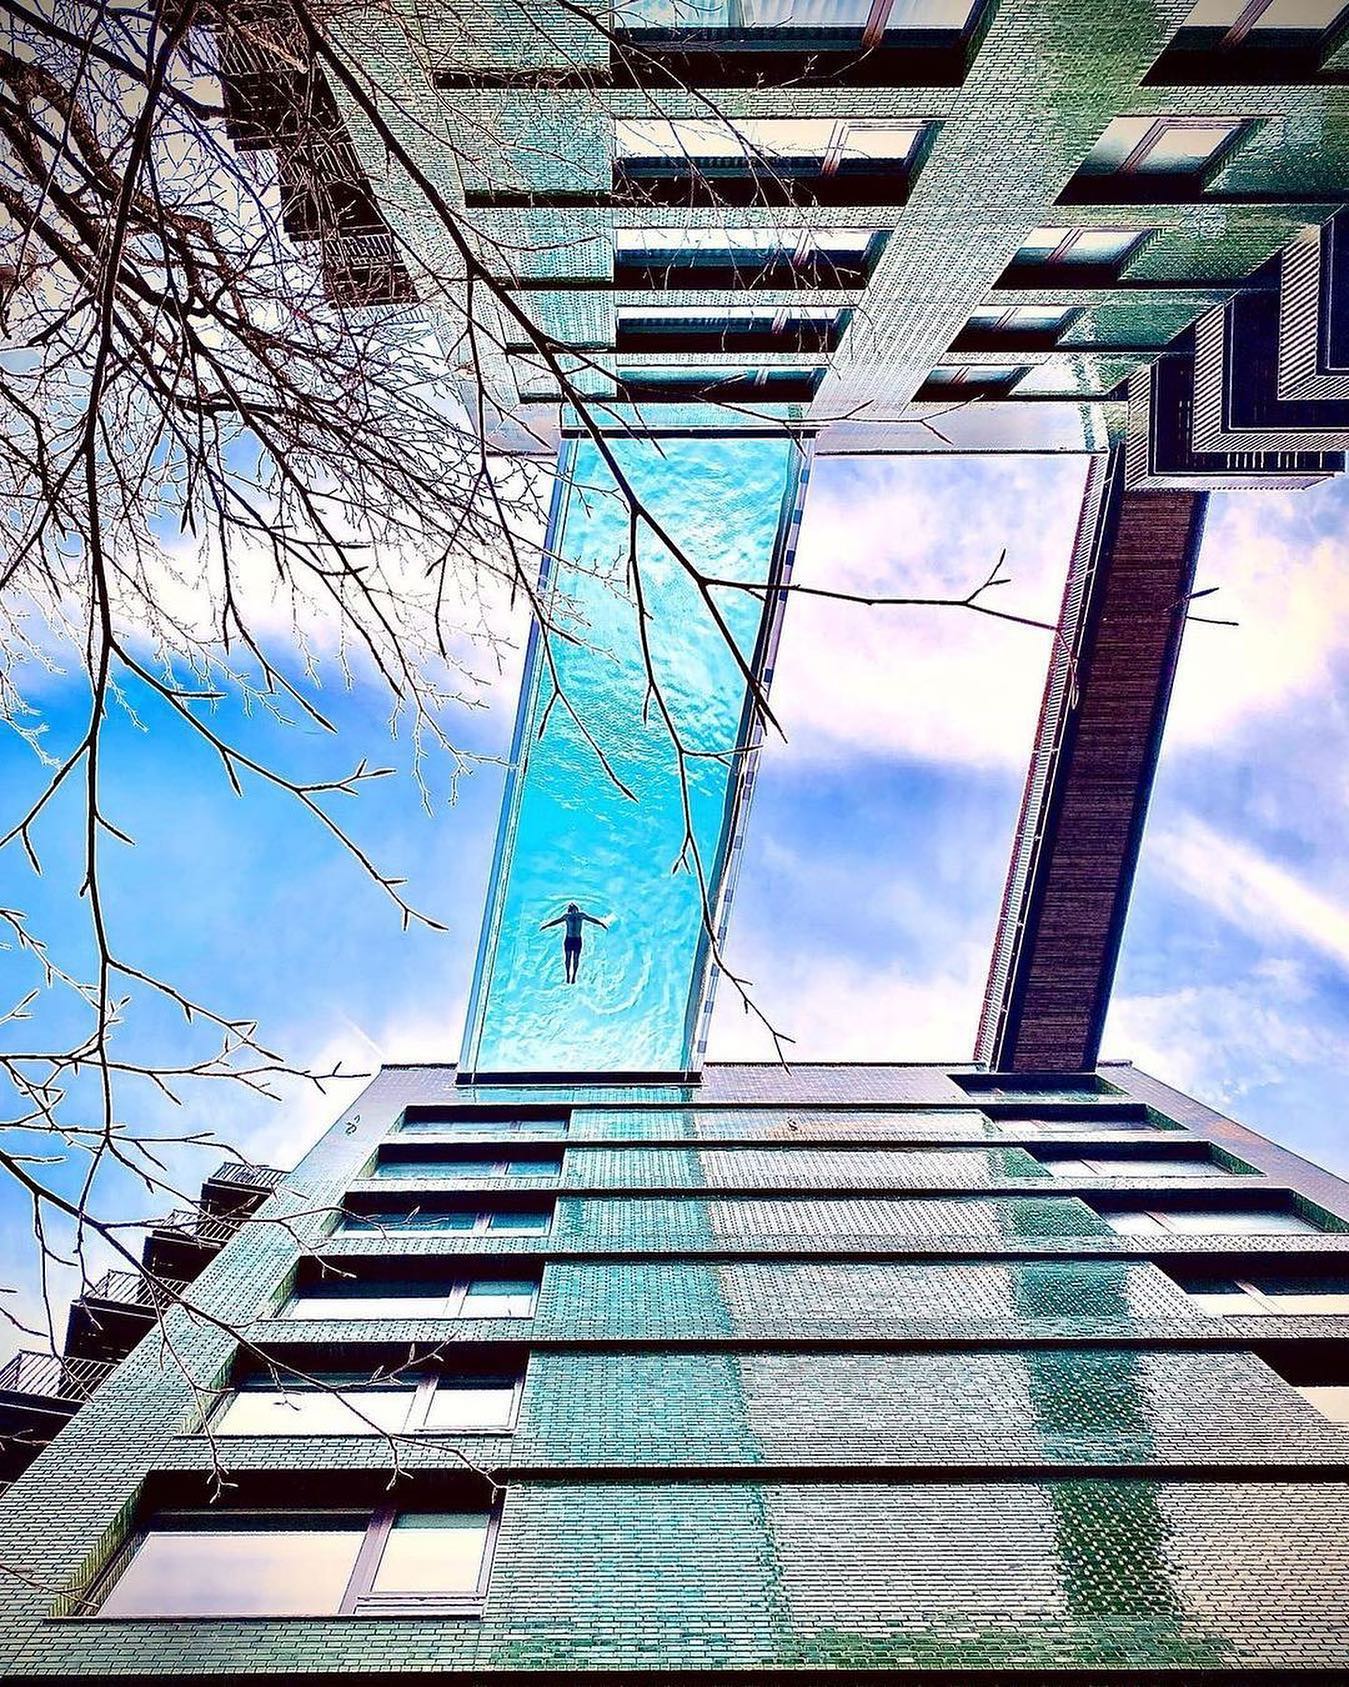 全球首座透明空中泳池！倫敦豪宅10層樓高飄浮泳池感受360度視角美景